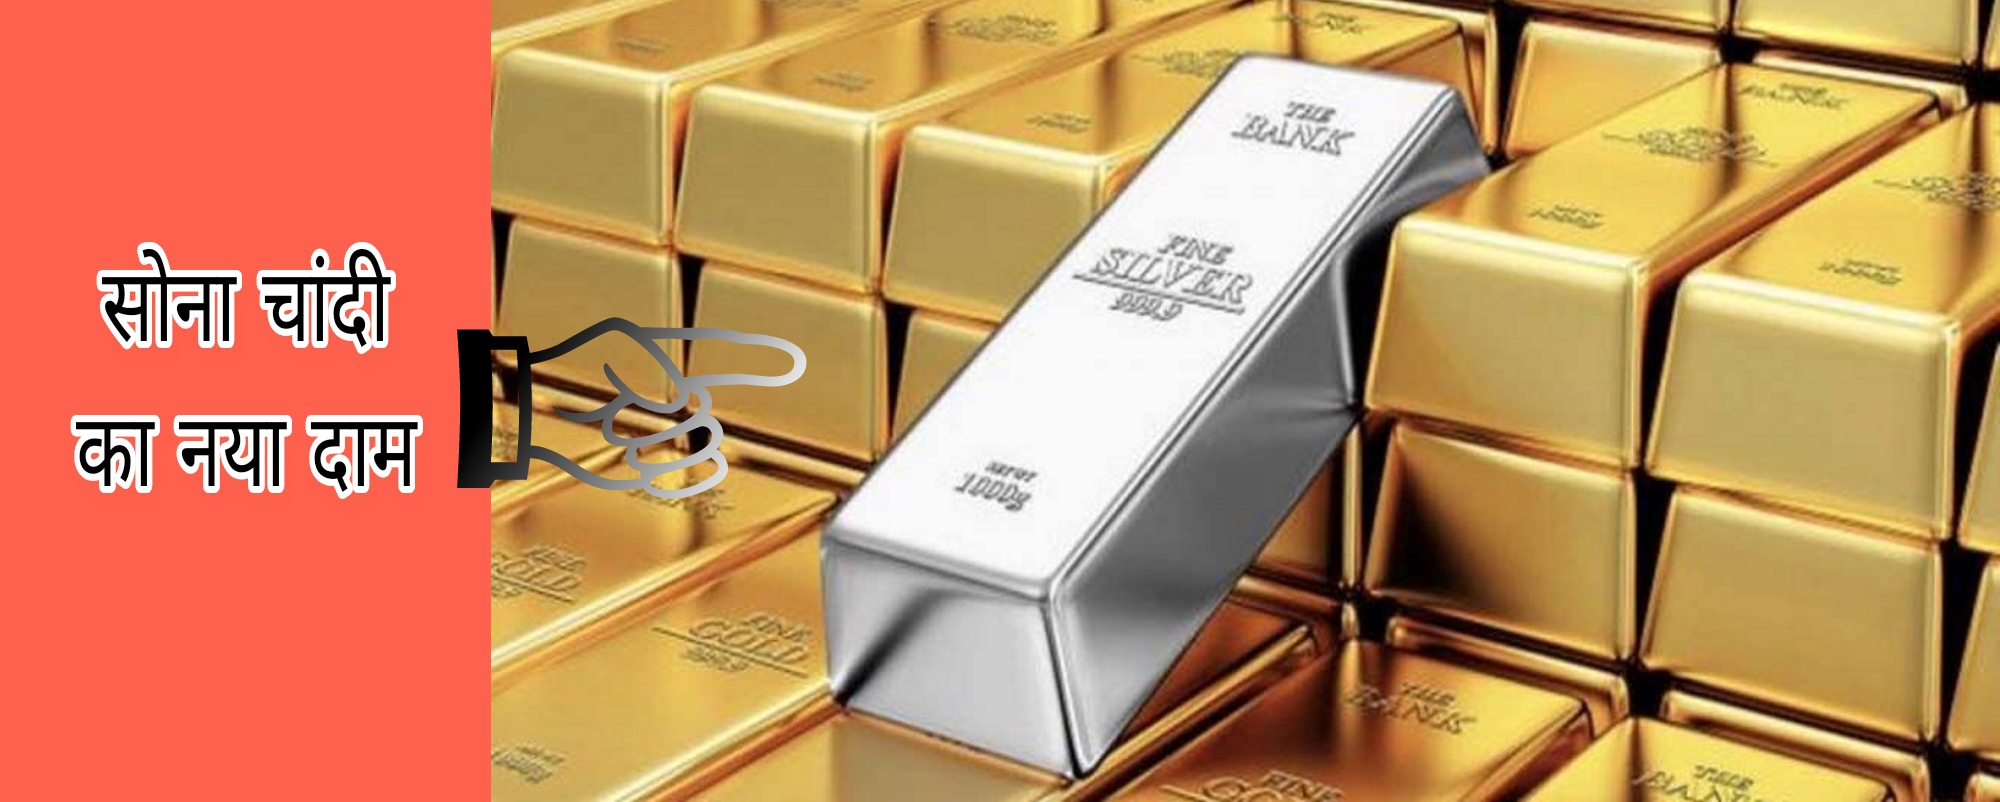 Gold Price:  चांदी और सोने की कीमत में आई बड़ी तेजी, जाने आज का नया भाव